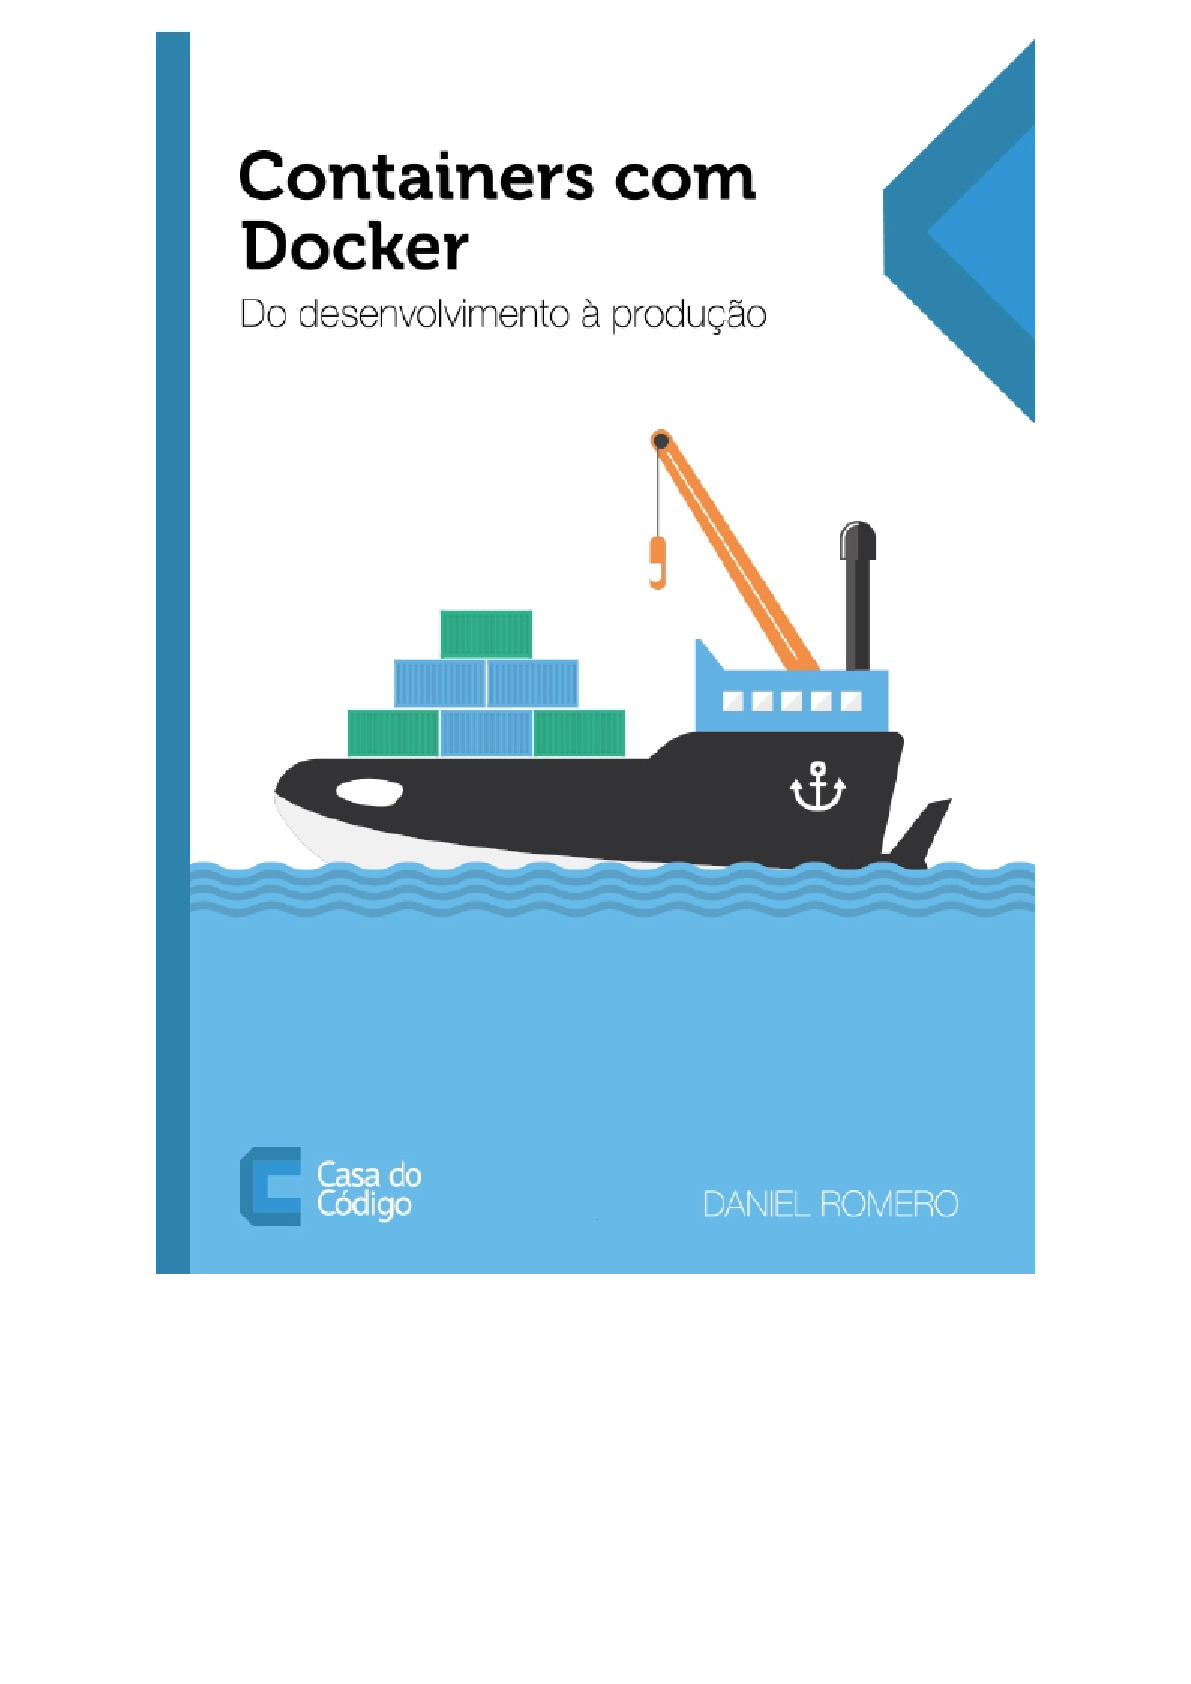 Containers com Docker do Desenvolvimento a Producao